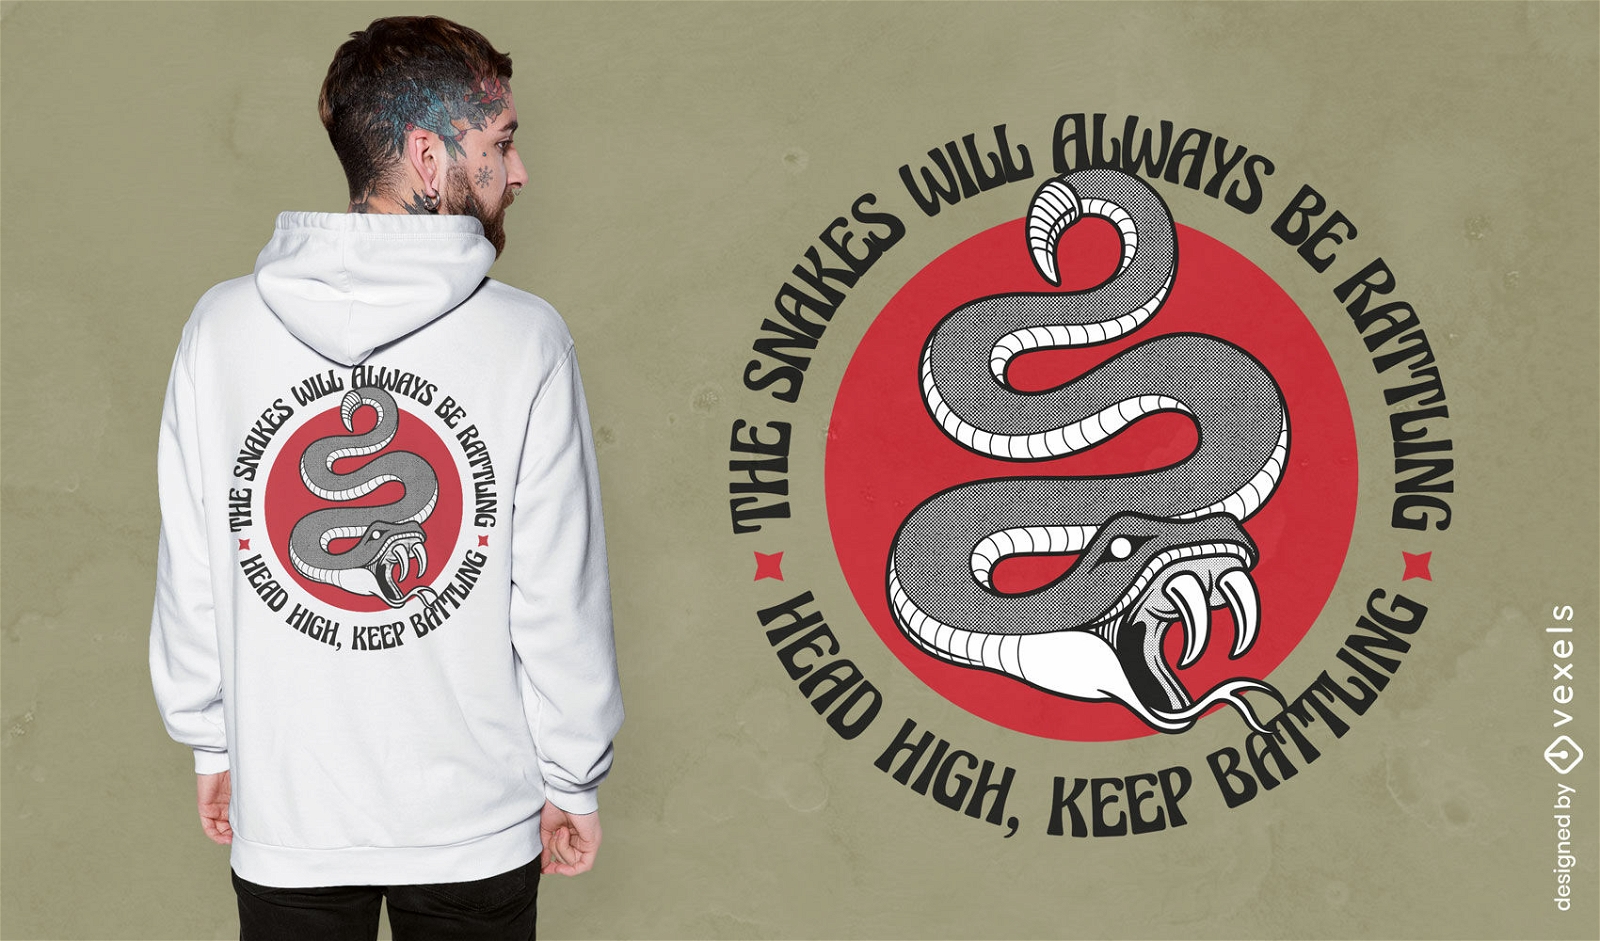 Schlangenreptil-Tierangriffs-T-Shirt Design